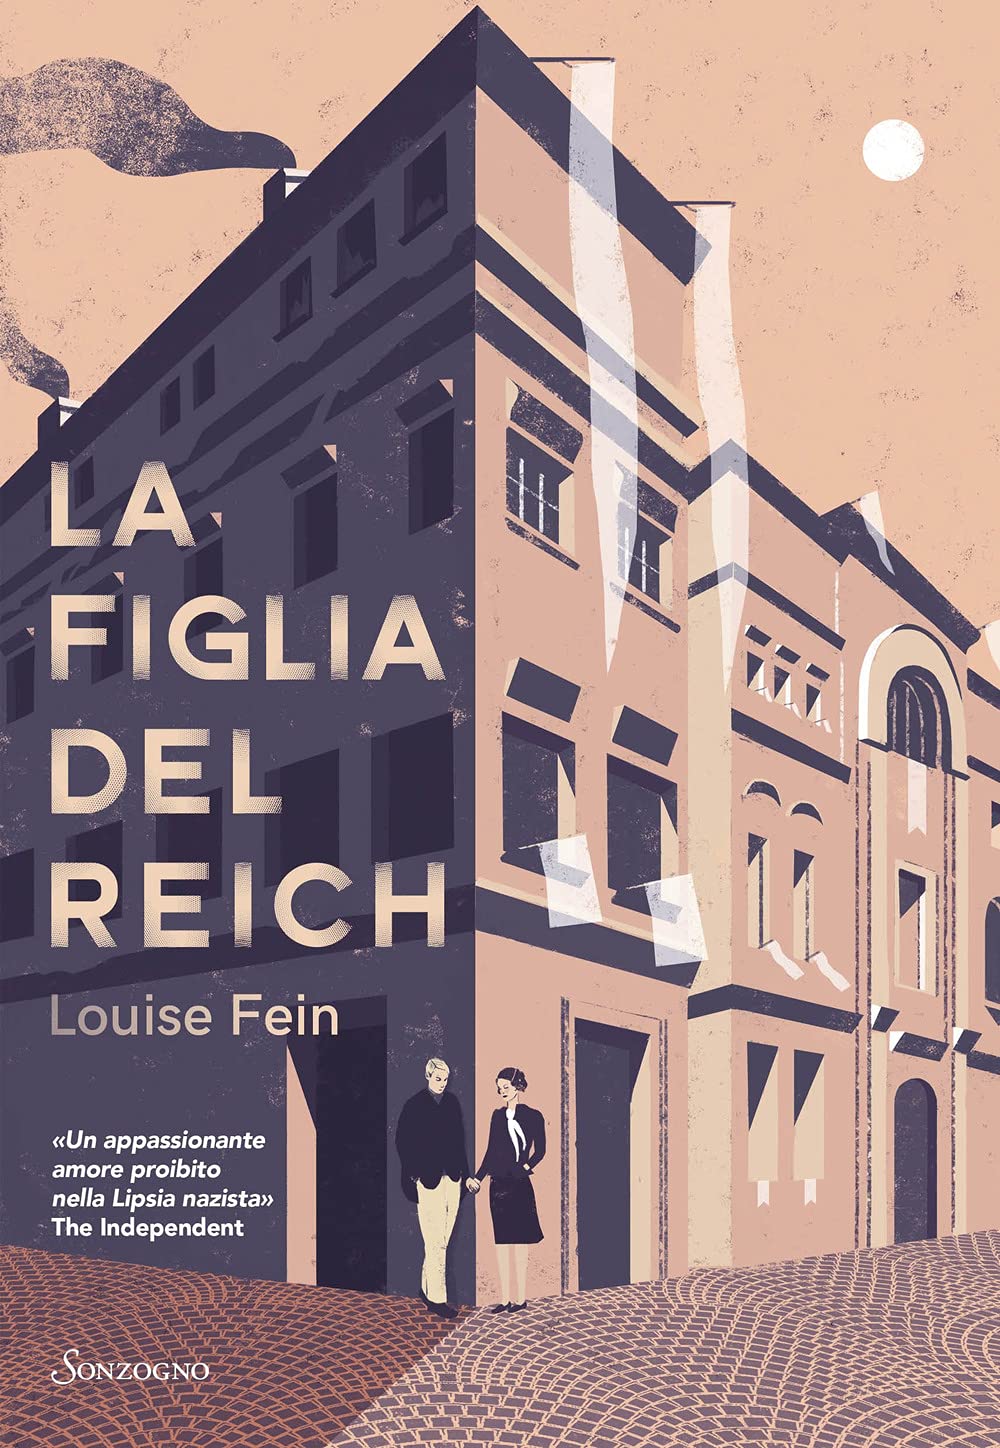 “La figlia del Reich” – Louise Fein